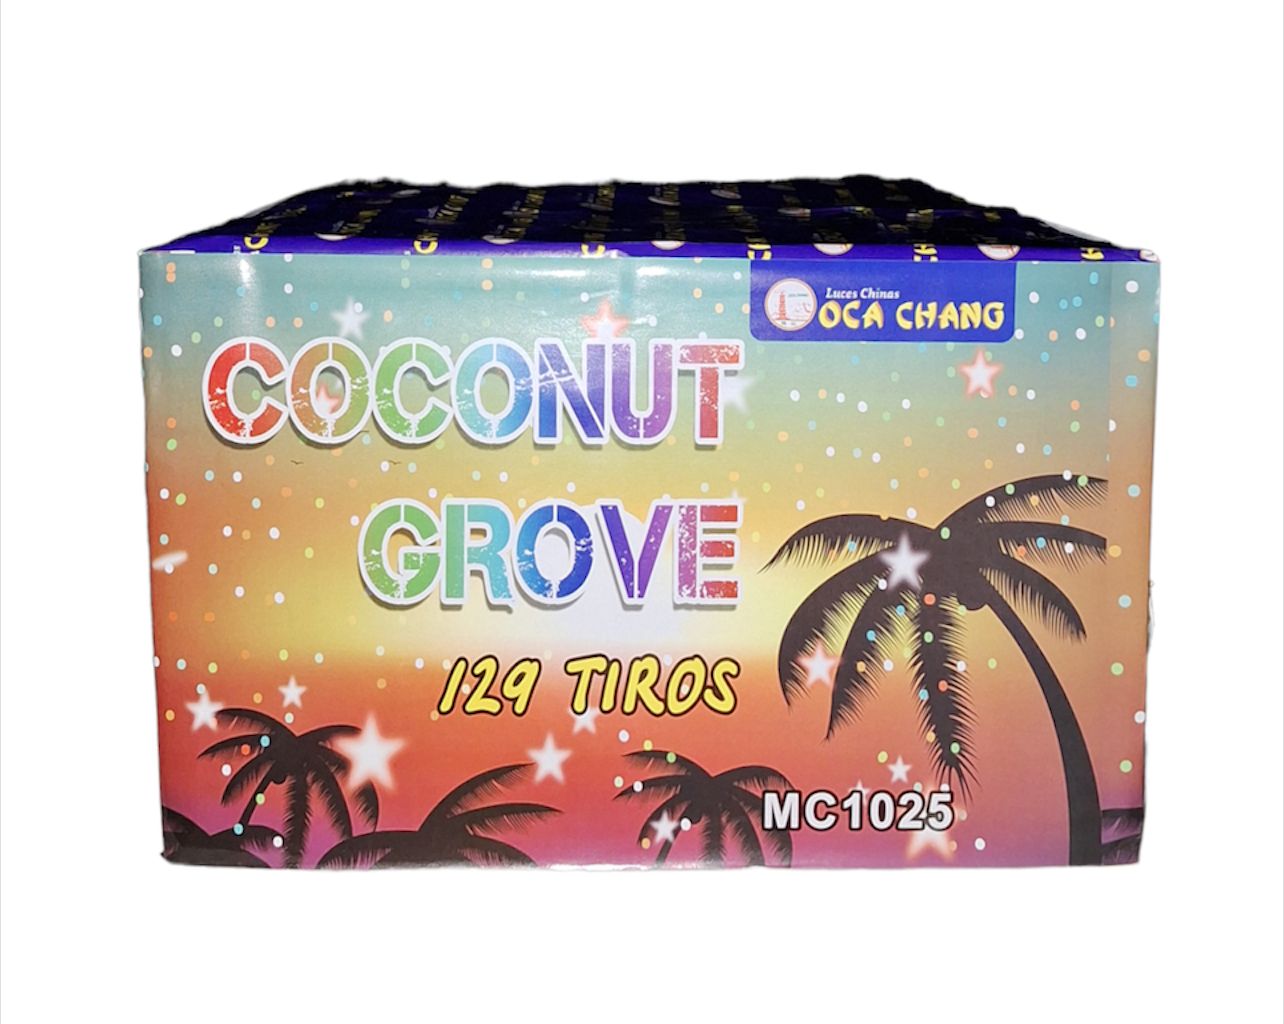 Batería Coconut Groove OCA CHANG 🌟ESPECIAL🌟 de 129 Tiros 🎆Grado Profesional🎆